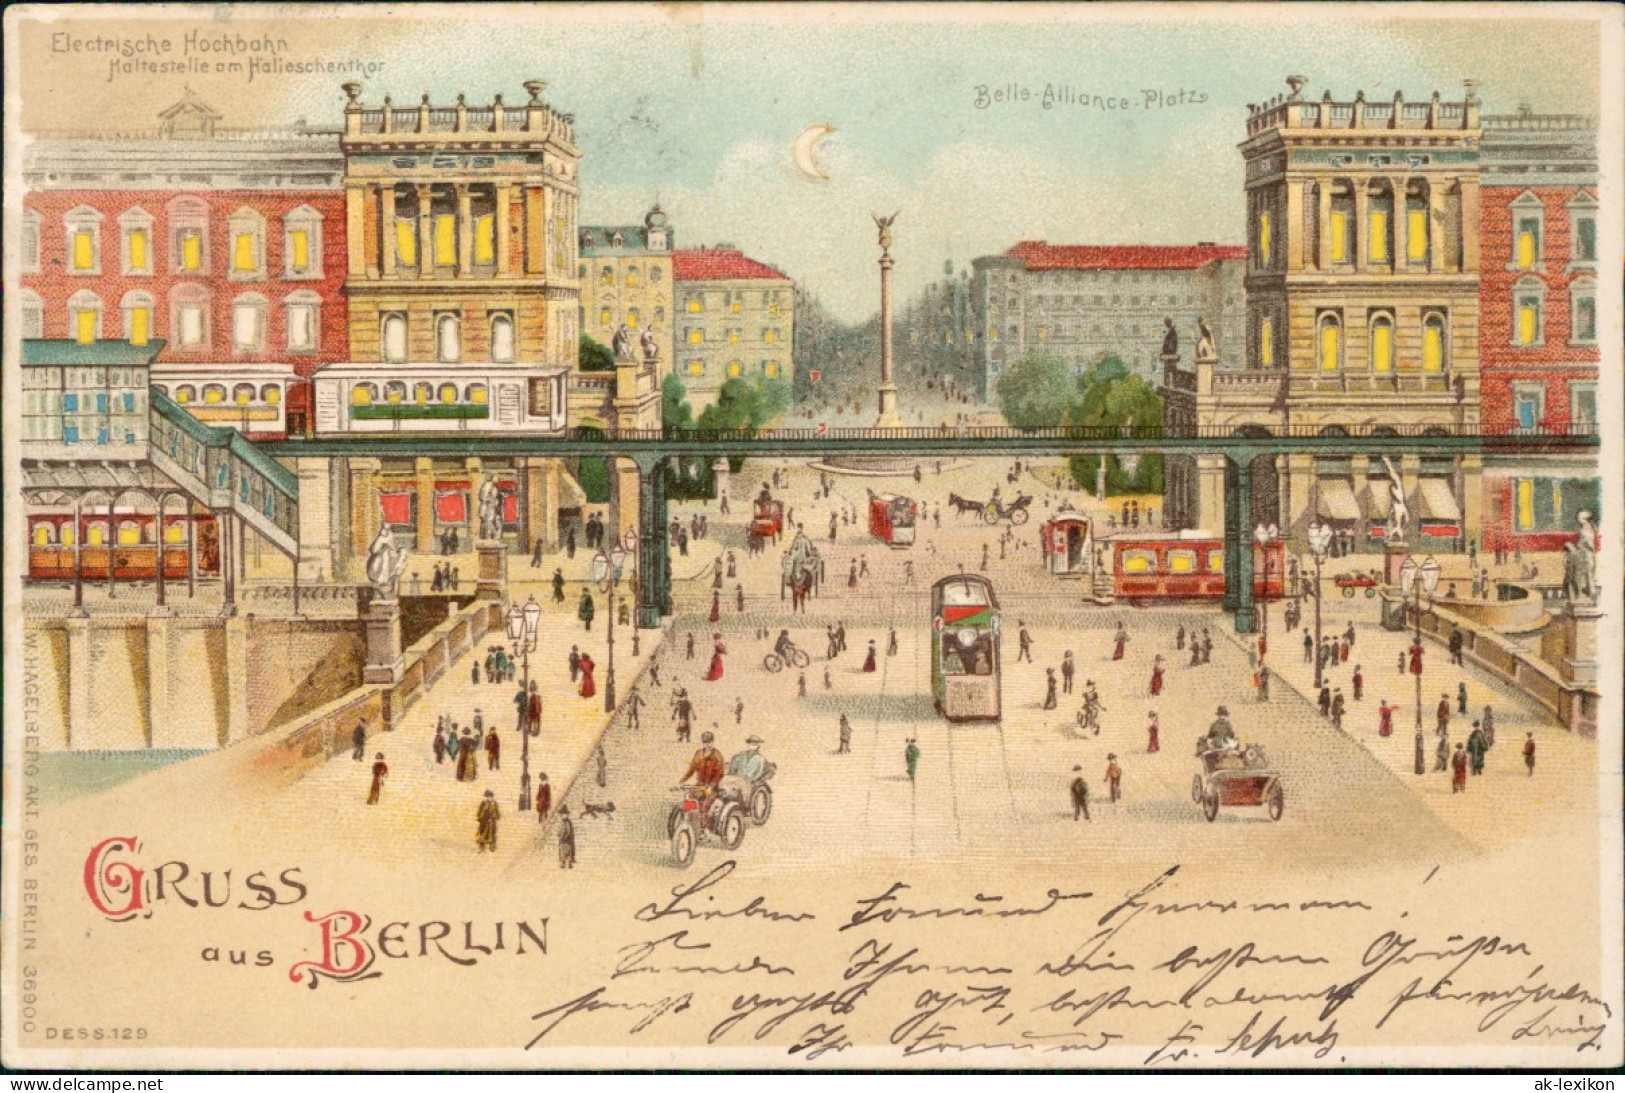 Ansichtskarte Kreuzberg-Berlin Belle-Allianceplatz 1905 - Kreuzberg